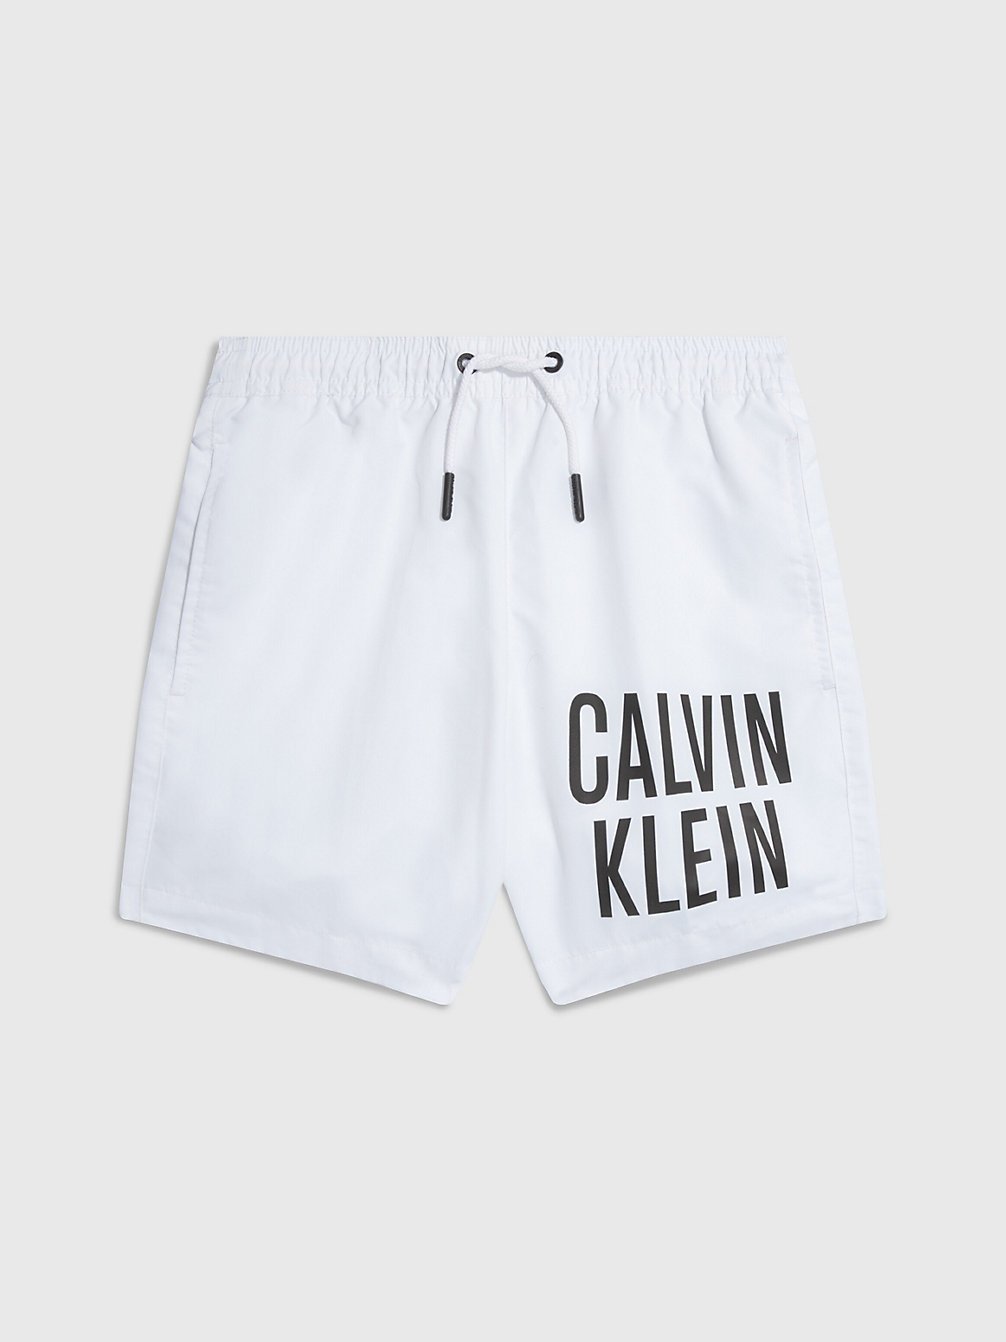 PVH CLASSIC WHITE > Badeshorts Für Jungen - Intense Power > undefined Jungen - Calvin Klein